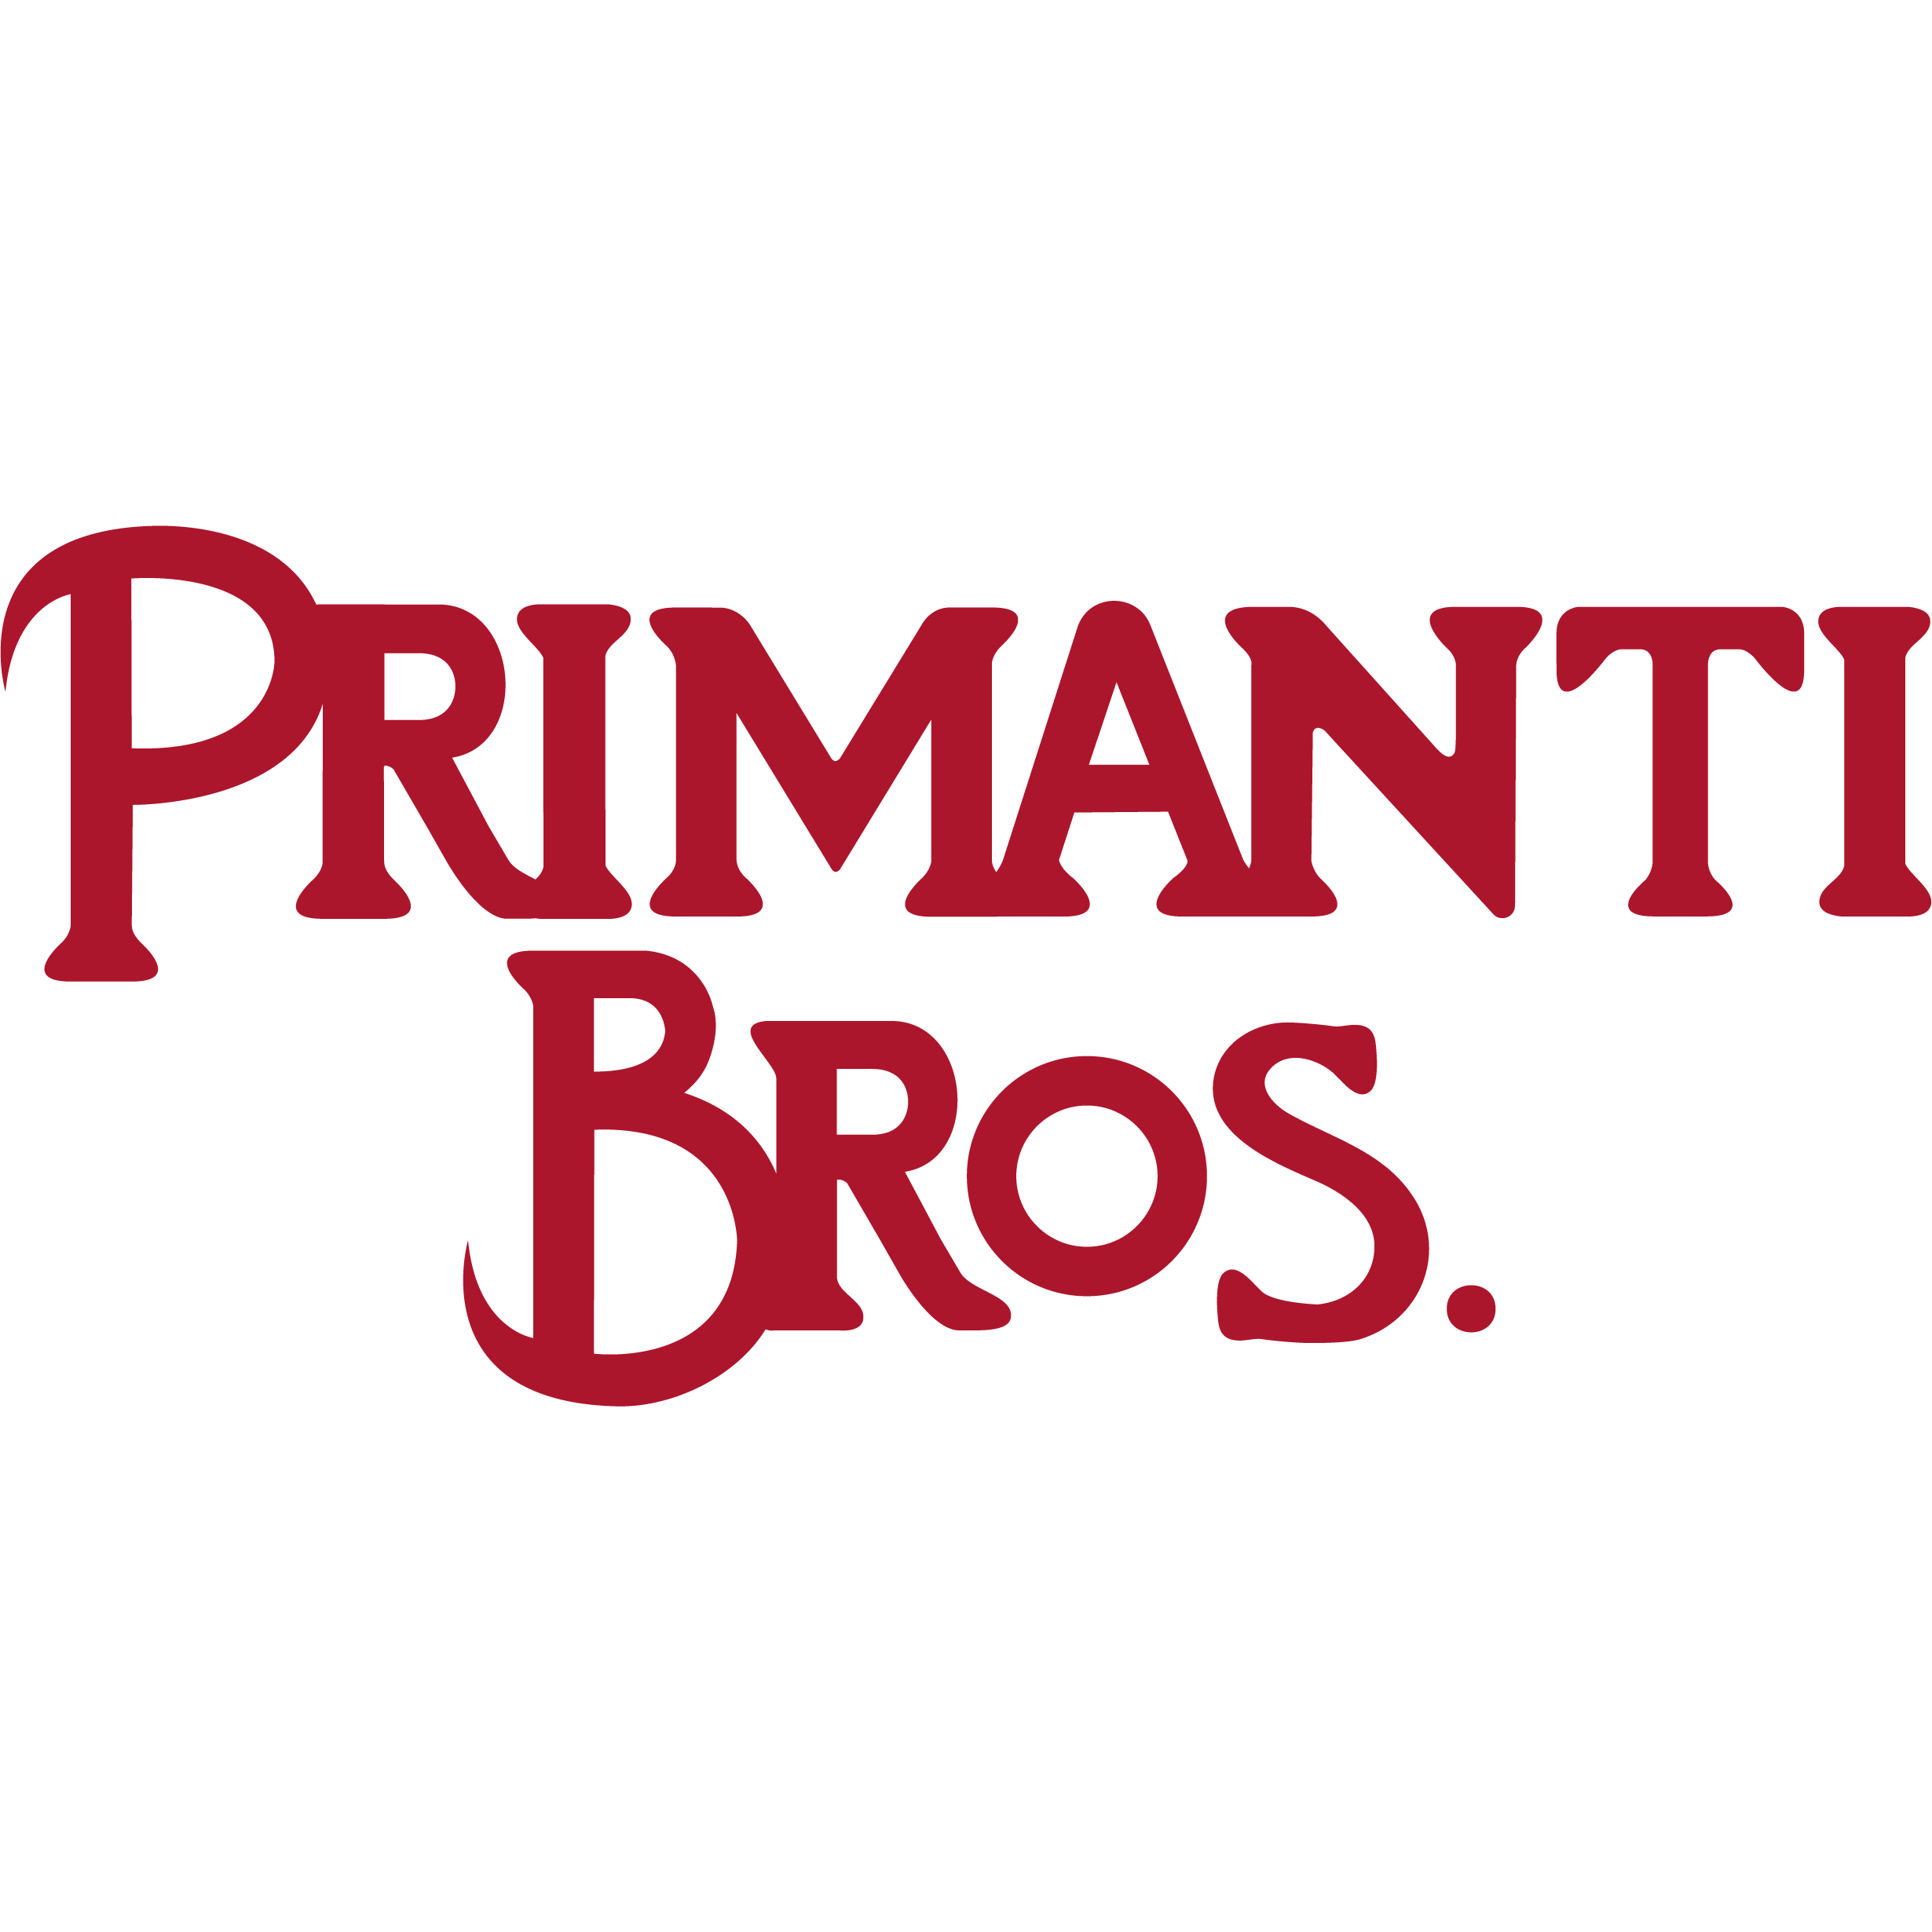 Primanti Bros. Restaurant and Bar - Lancaster, PA 17601 - (717)945-5959 | ShowMeLocal.com